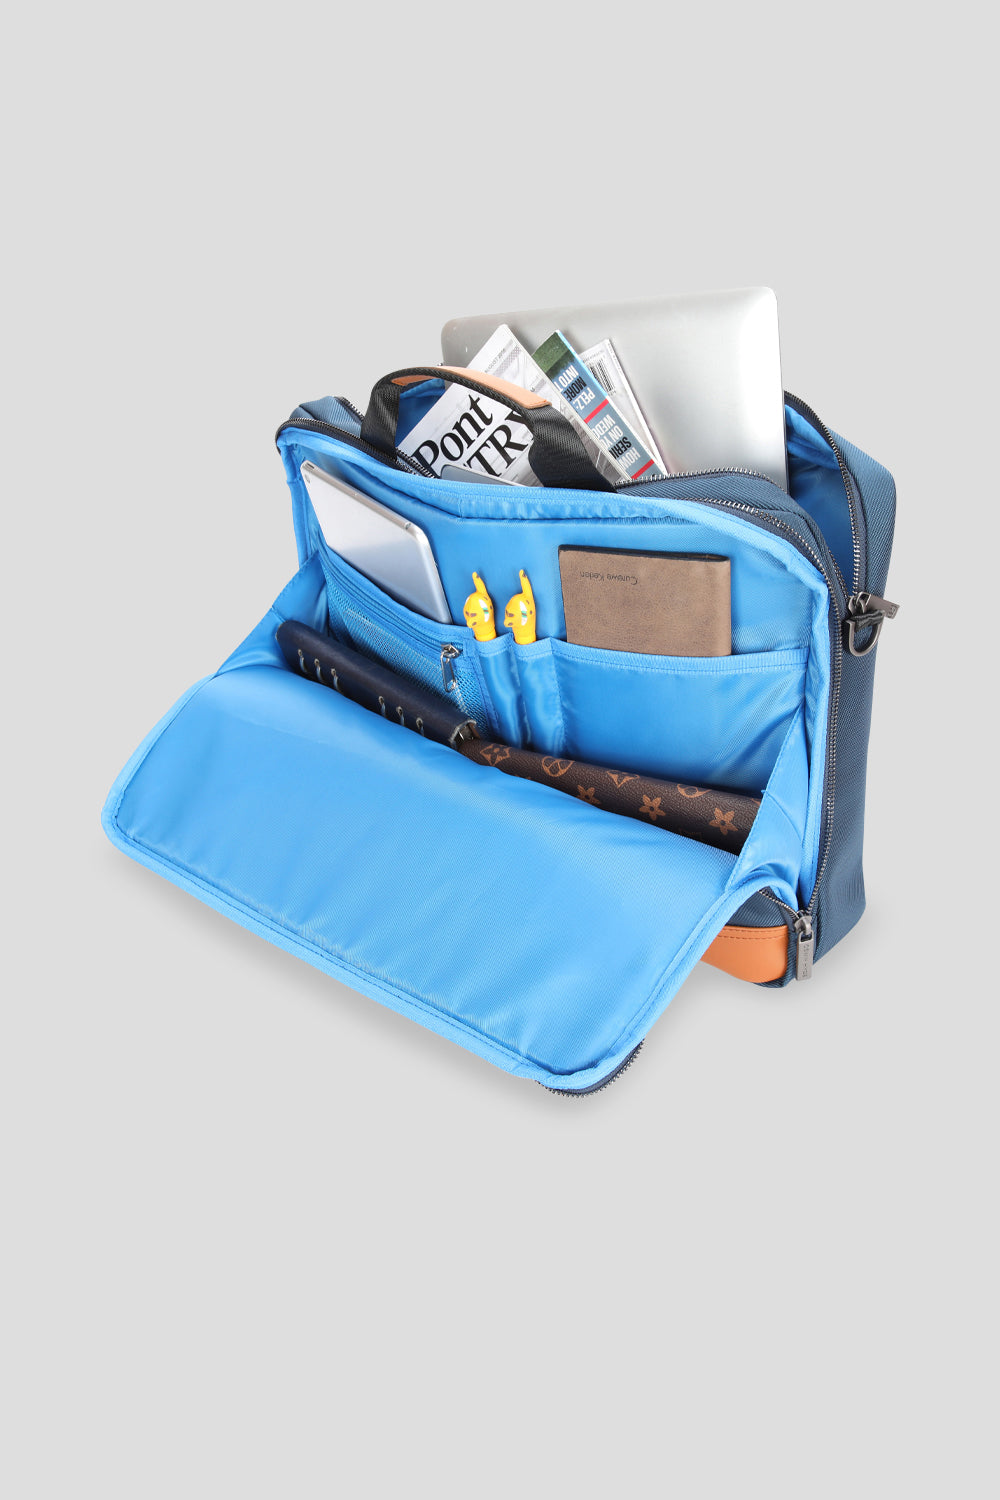 Euston office laptop bag in navy colour for men from oswin hyde open bag